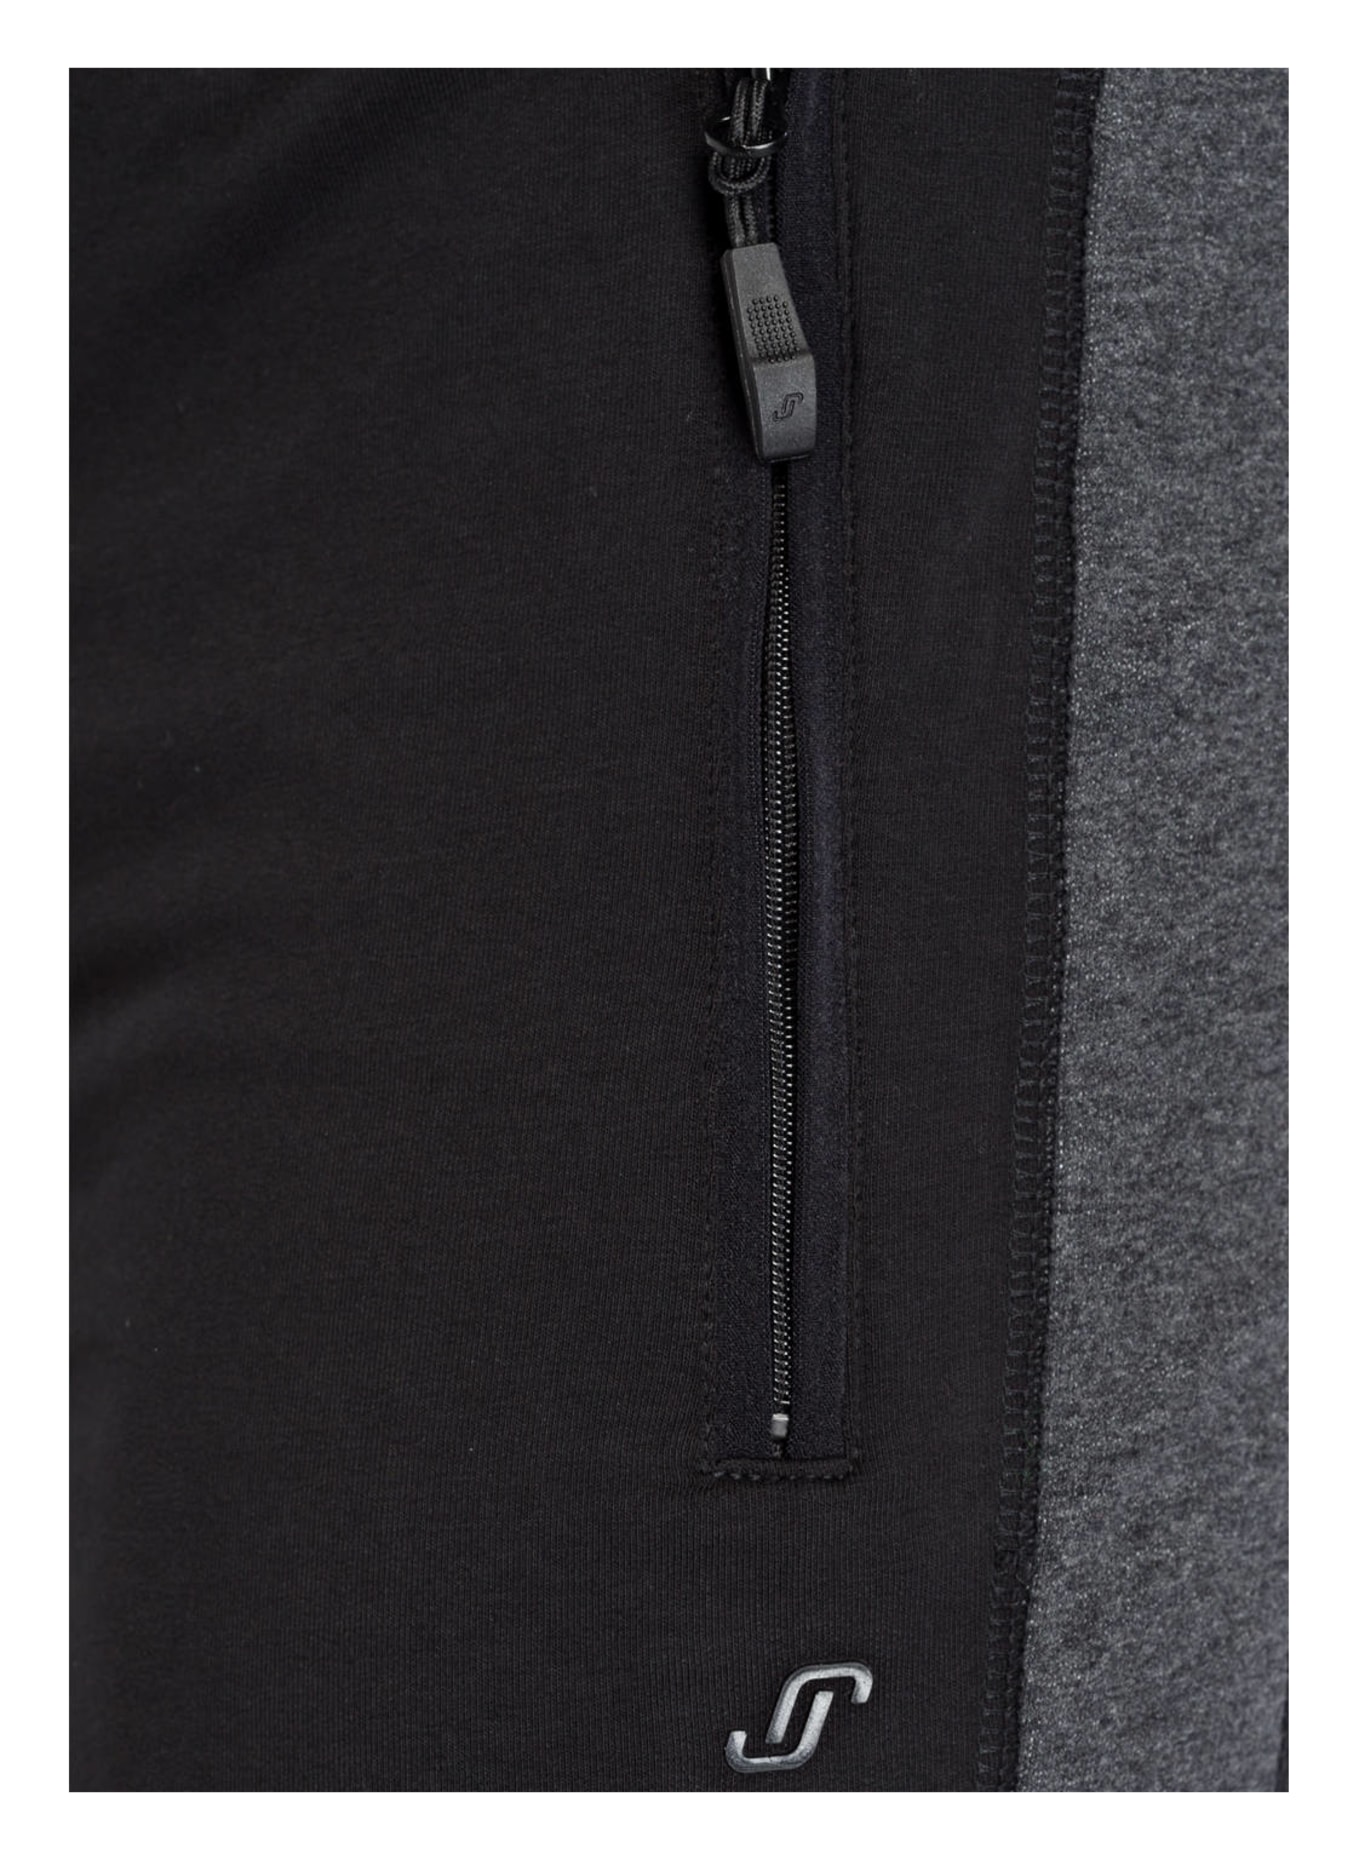 JOY sportswear Sweatpants FERNANDO, Color: BLACK (Image 5)